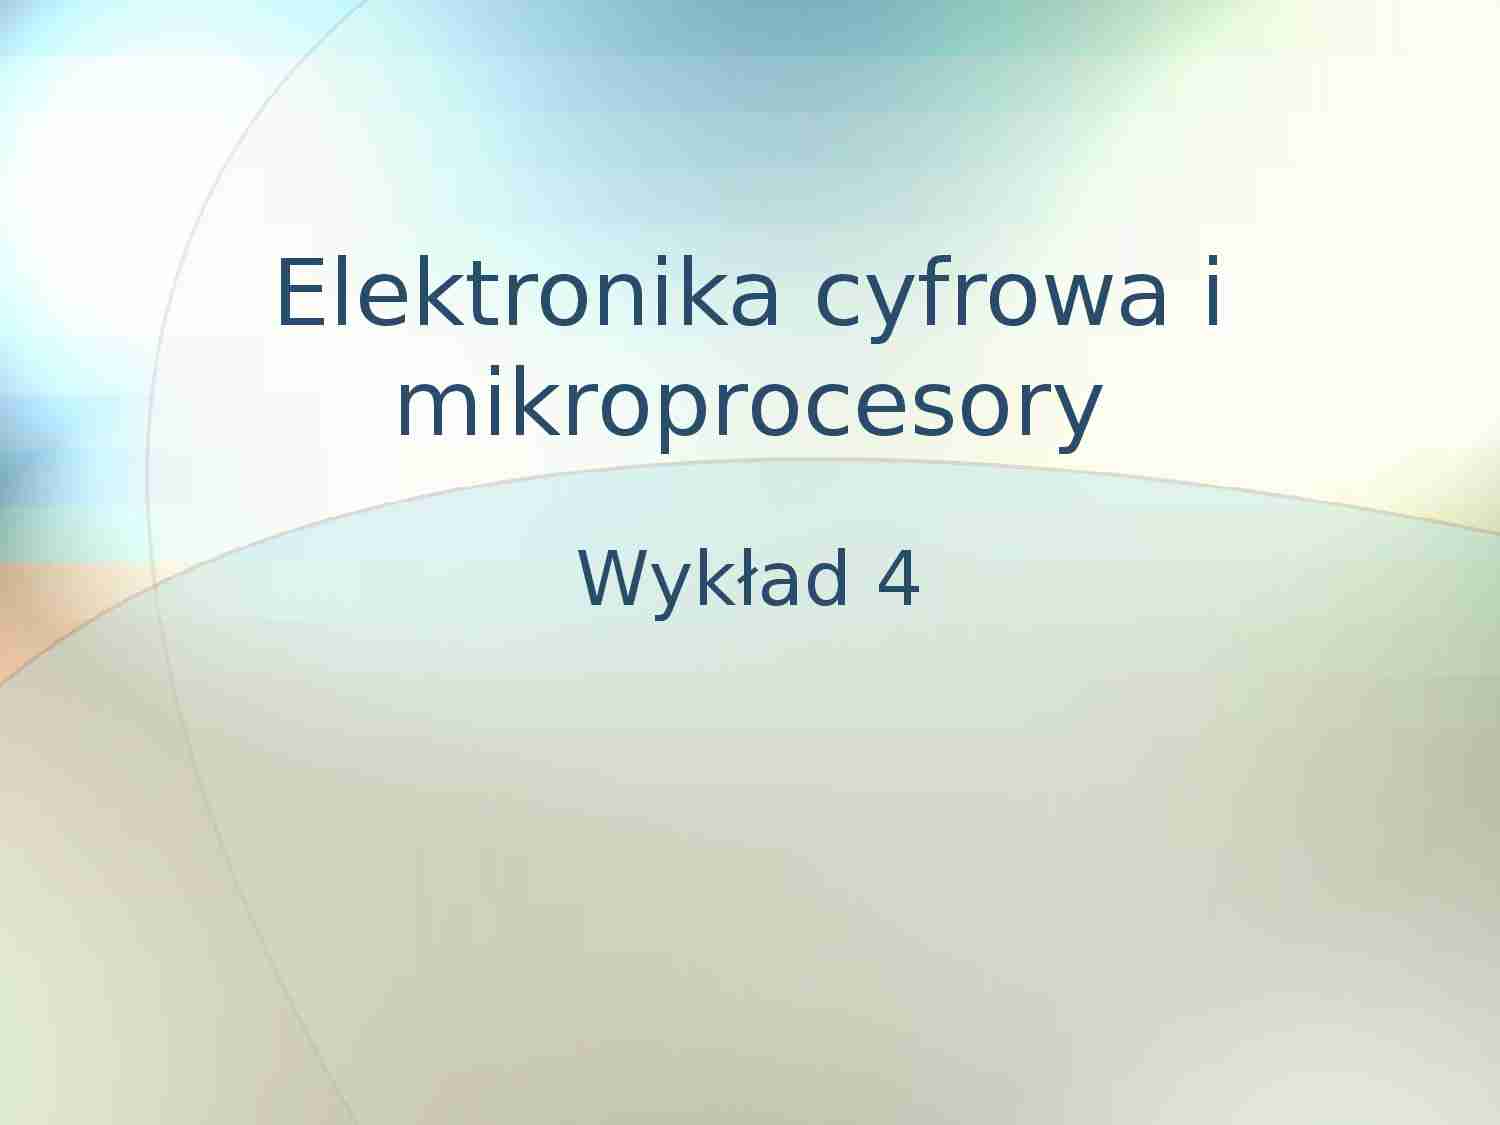 Elektronika cyfrowa i mikroprocesory  - omówienie - strona 1